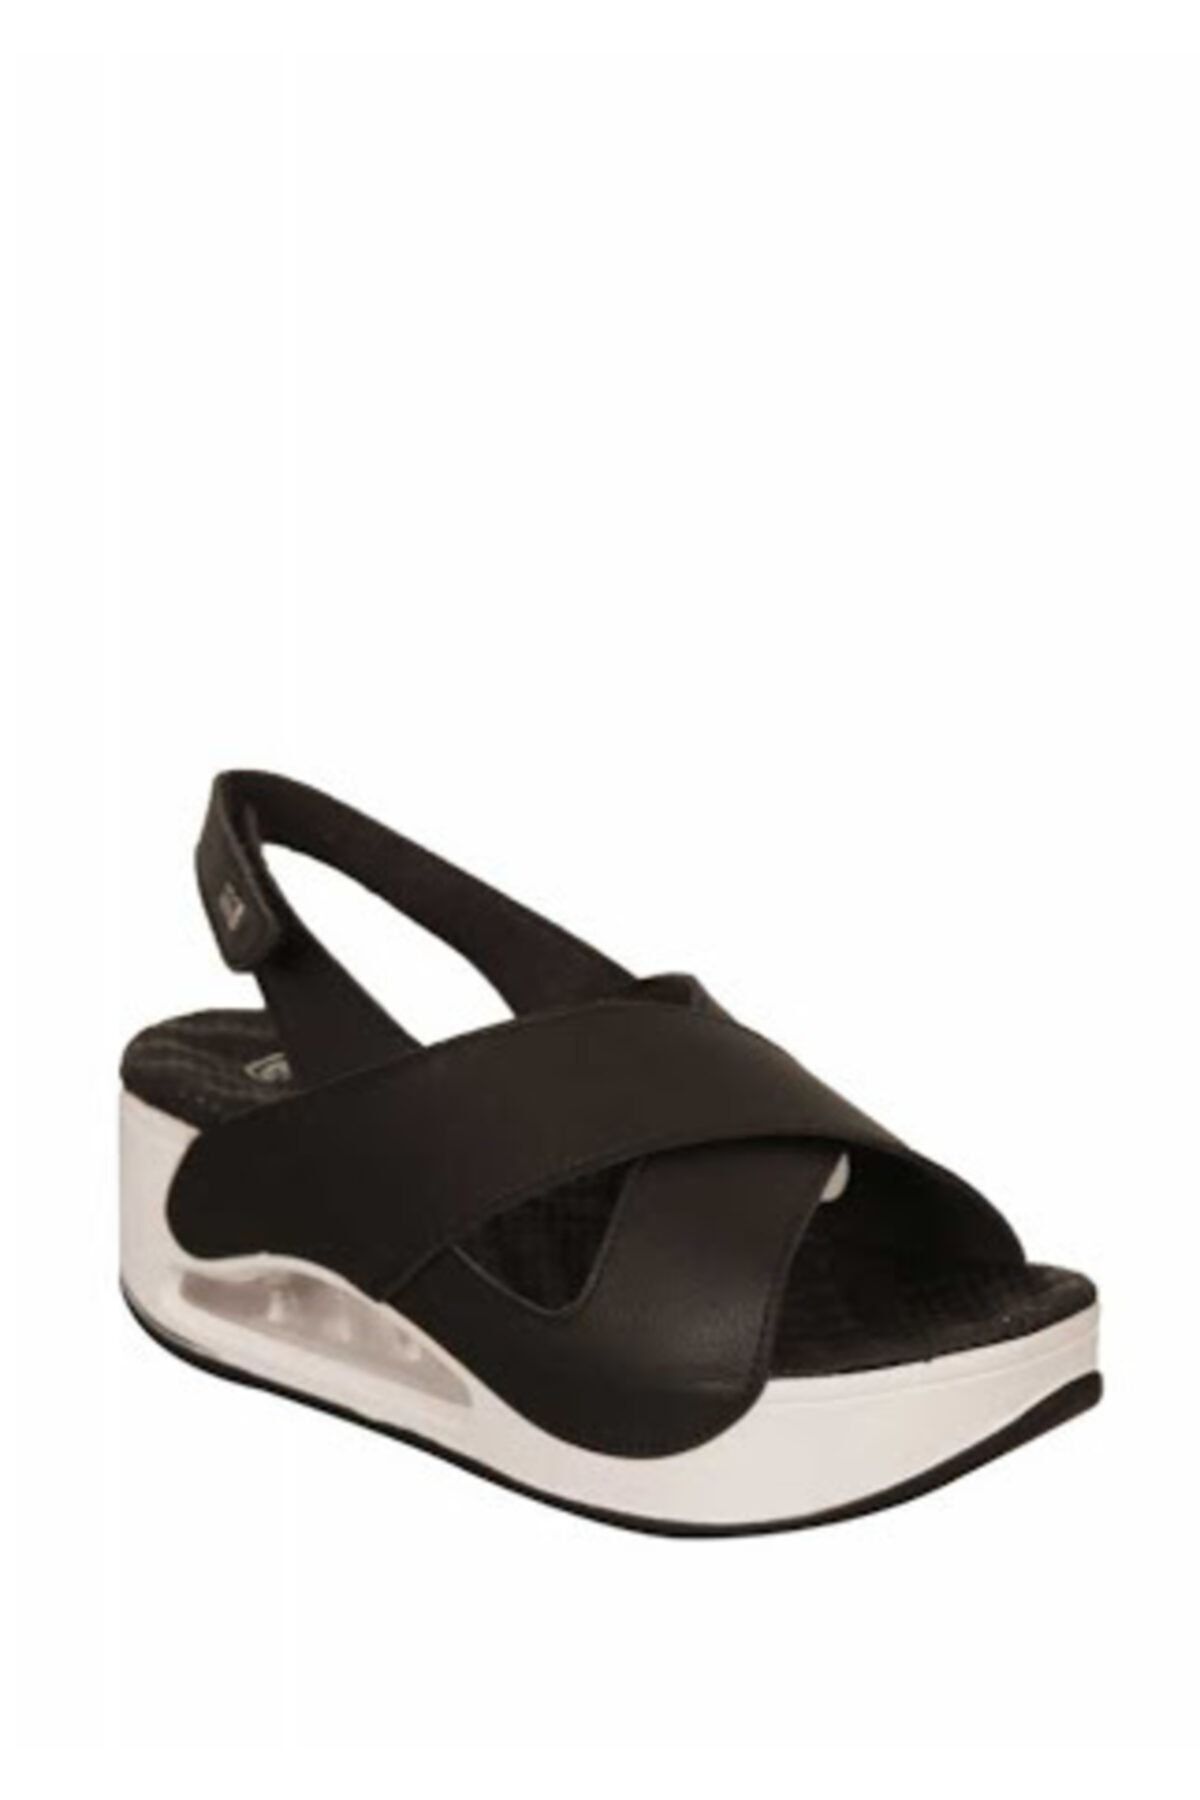 Muya Kadın Siyah Beyaz Dolgu Topuk Sandalet 28287-001